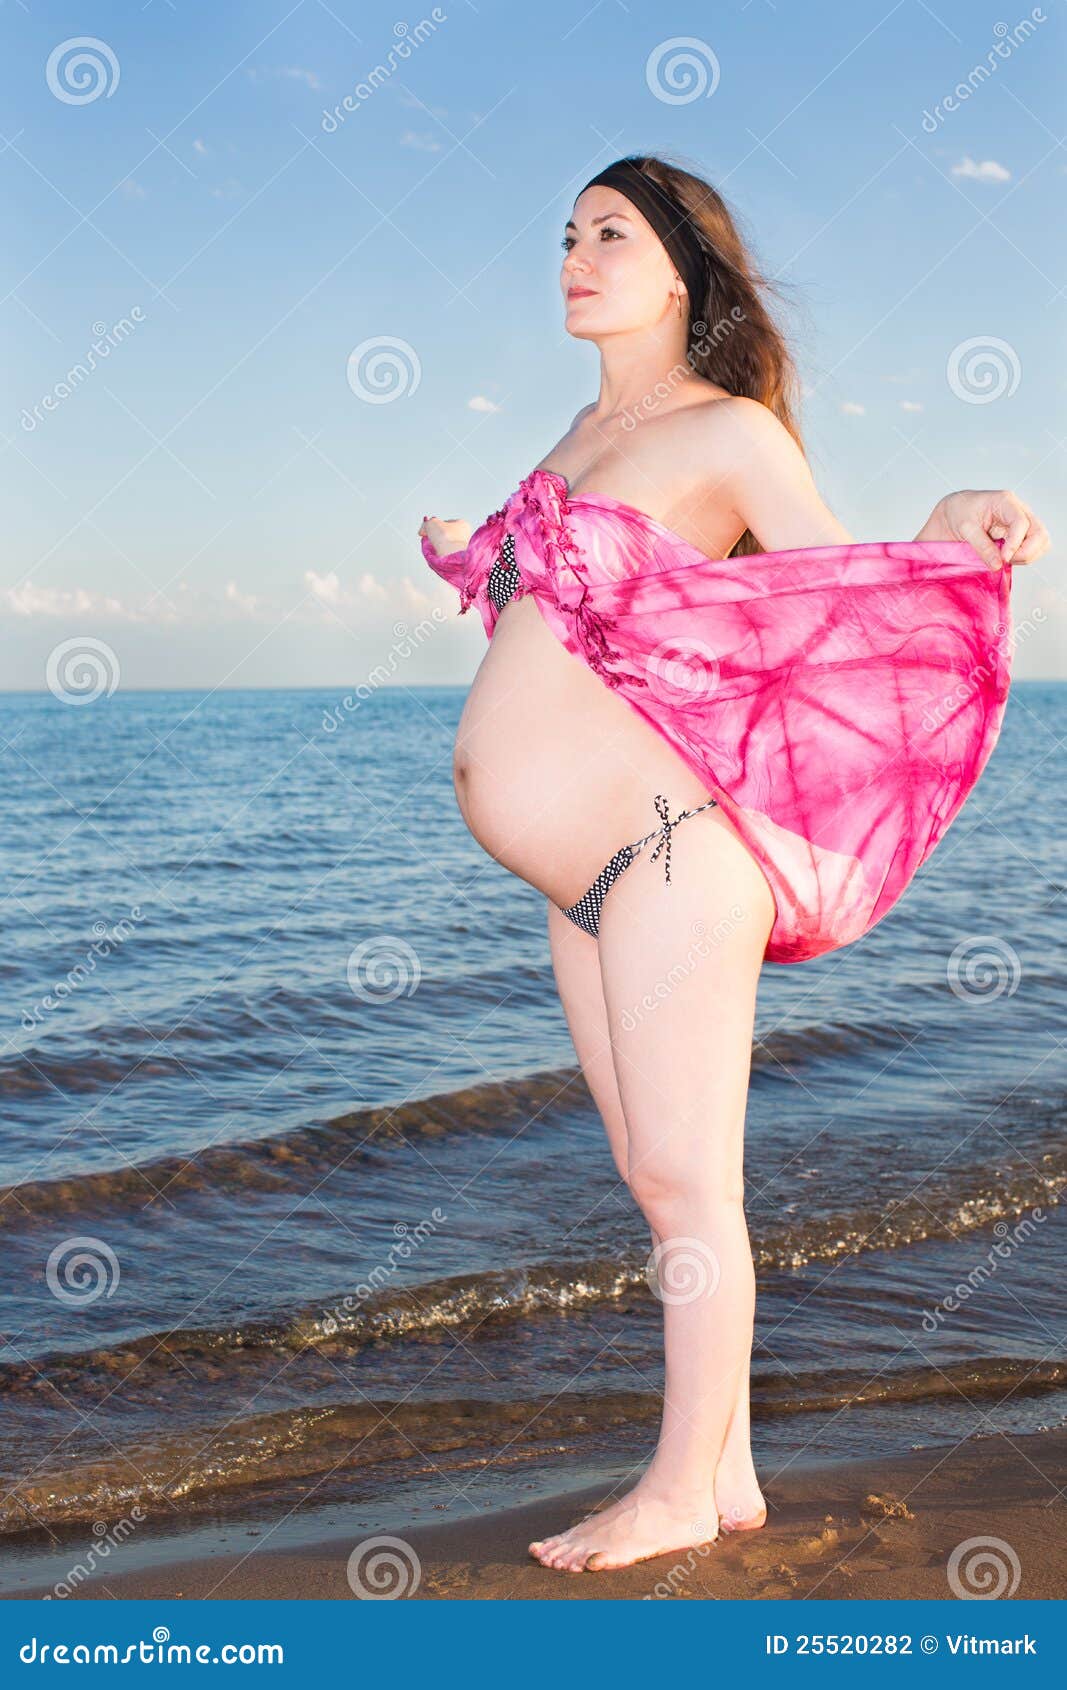 Am schwangere strand nackt frau Nackt am